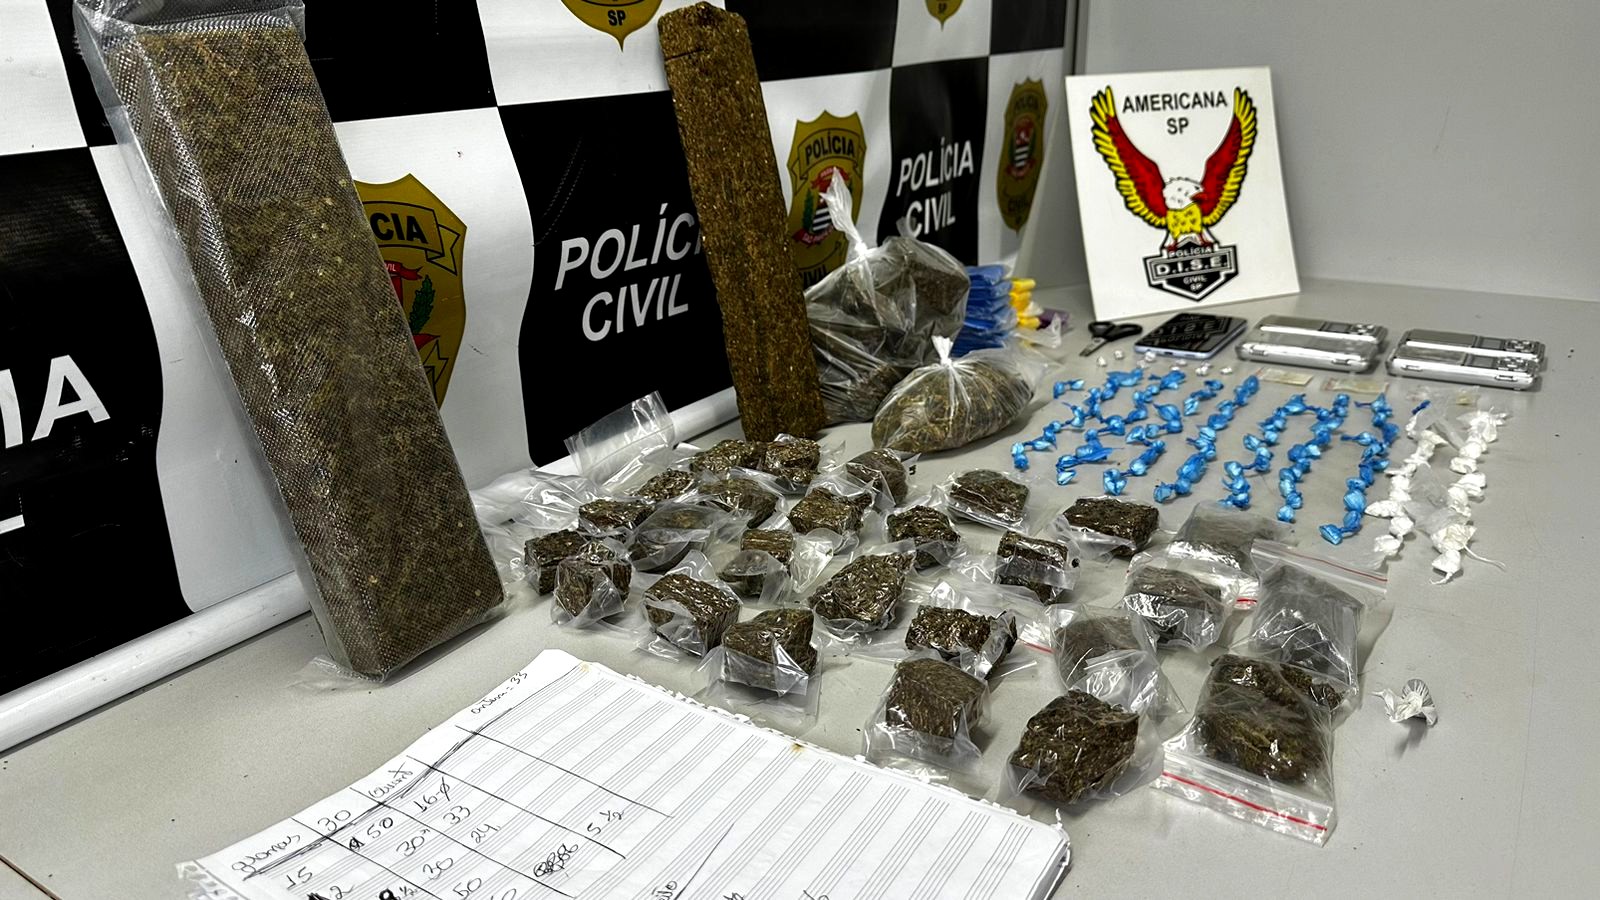 Dise prende traficante com quase 3kg de drogas em residência no Vila Mariana